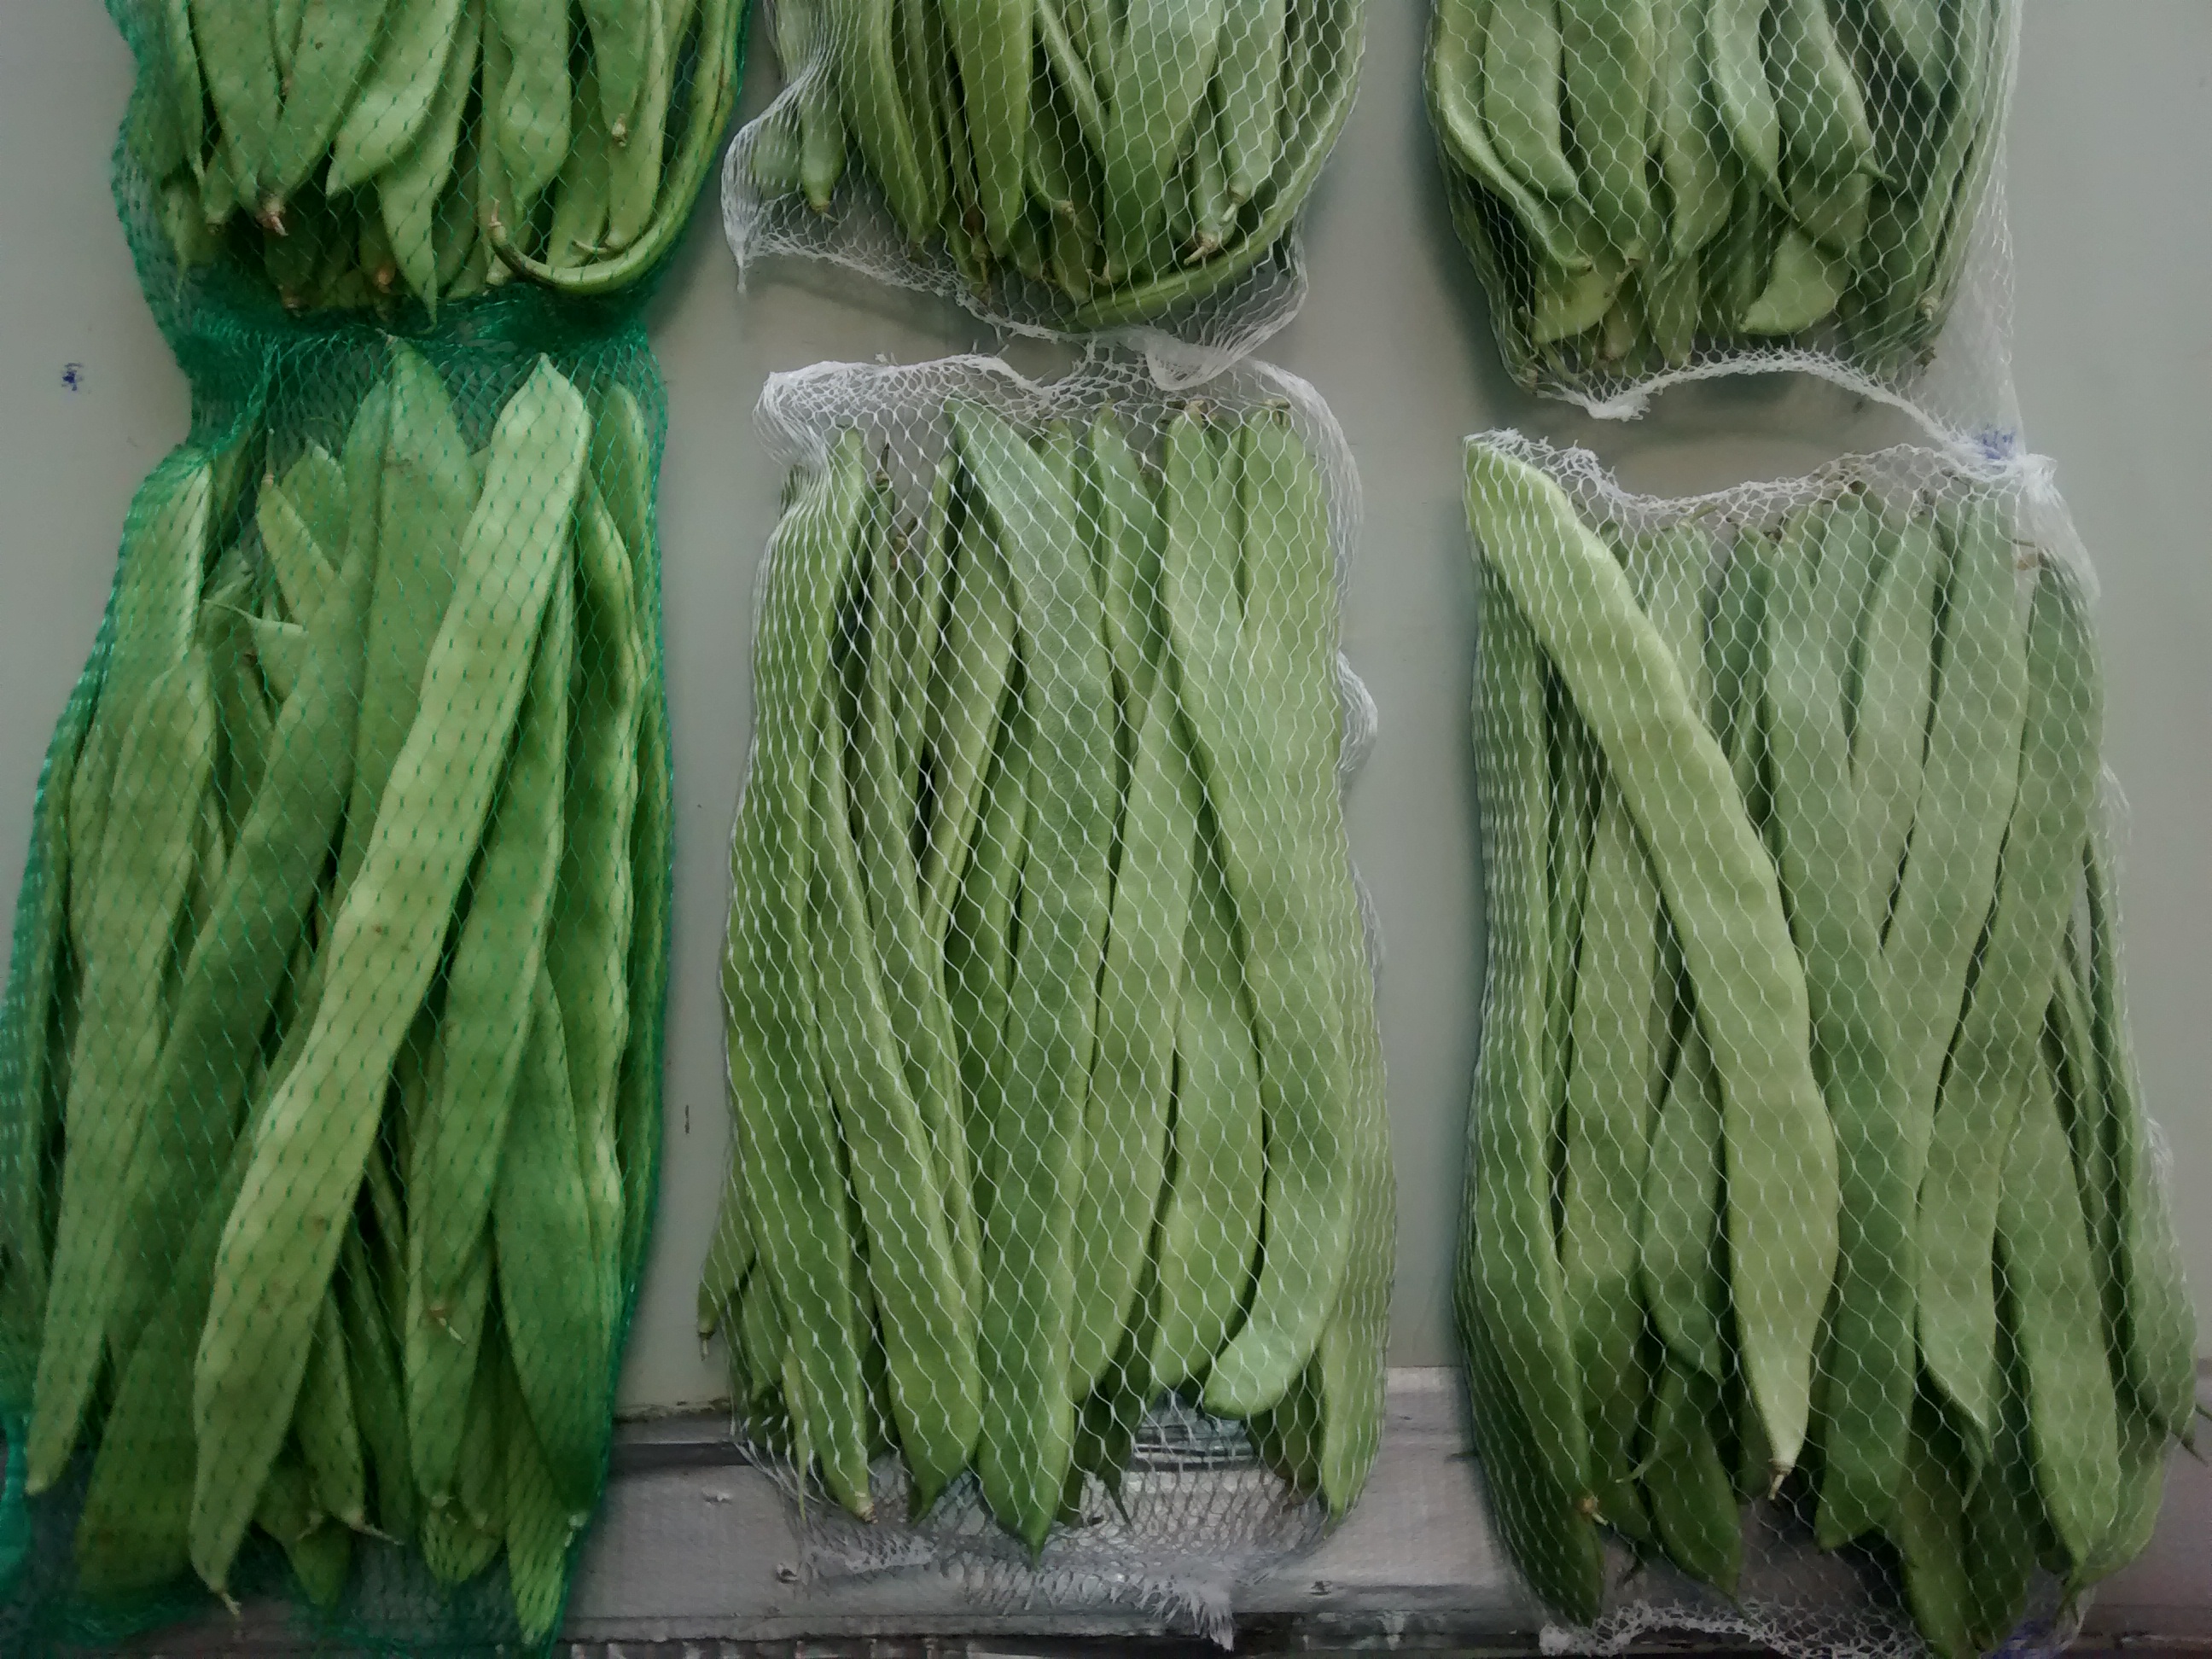 Mallas para judas verdes realizadas a partir de azucares obtenidos de la sanda y el meln